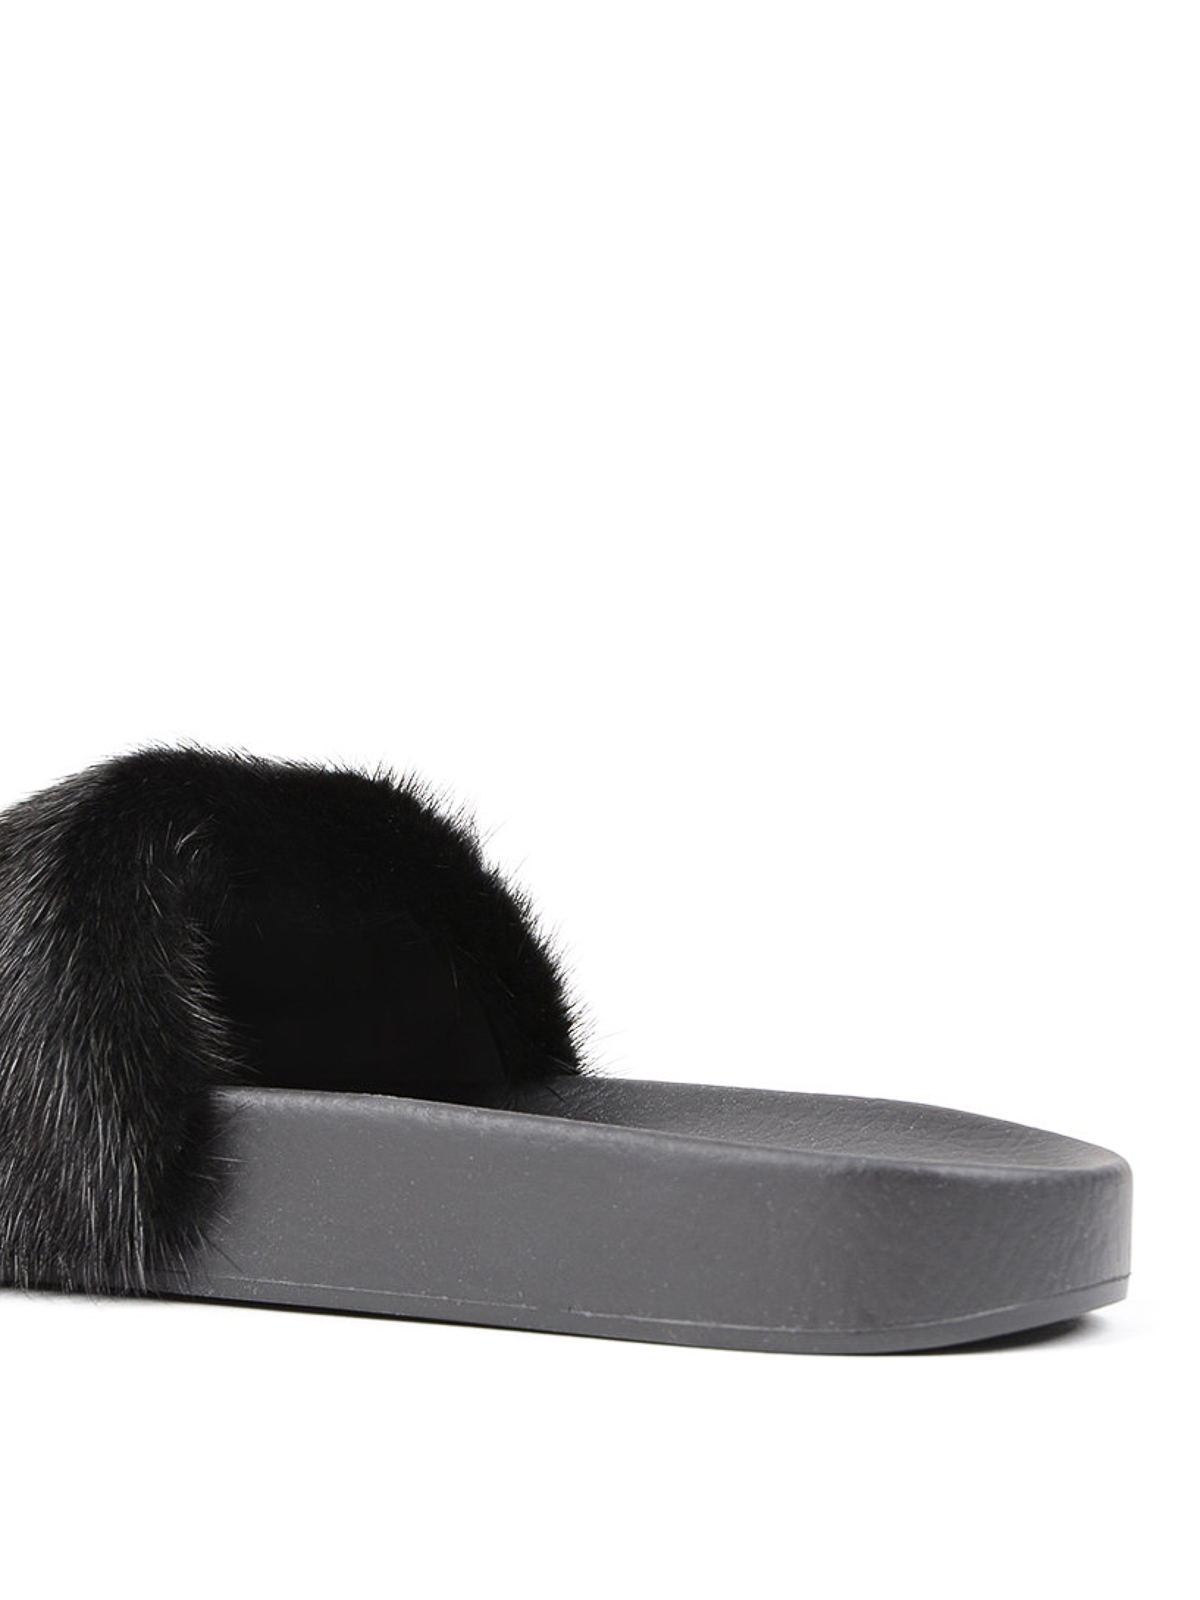 Sandals - Flade slides with mink fur